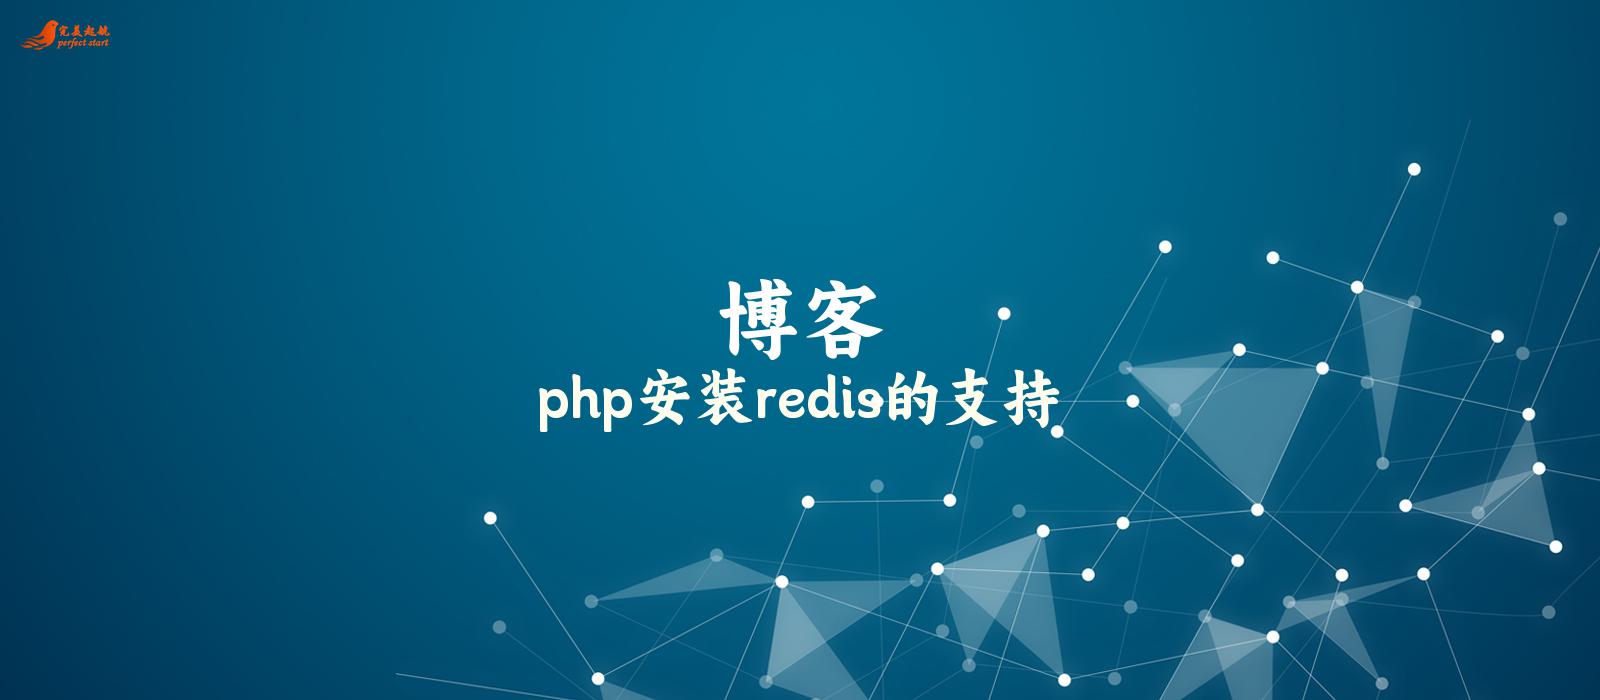 php安装redis的支持